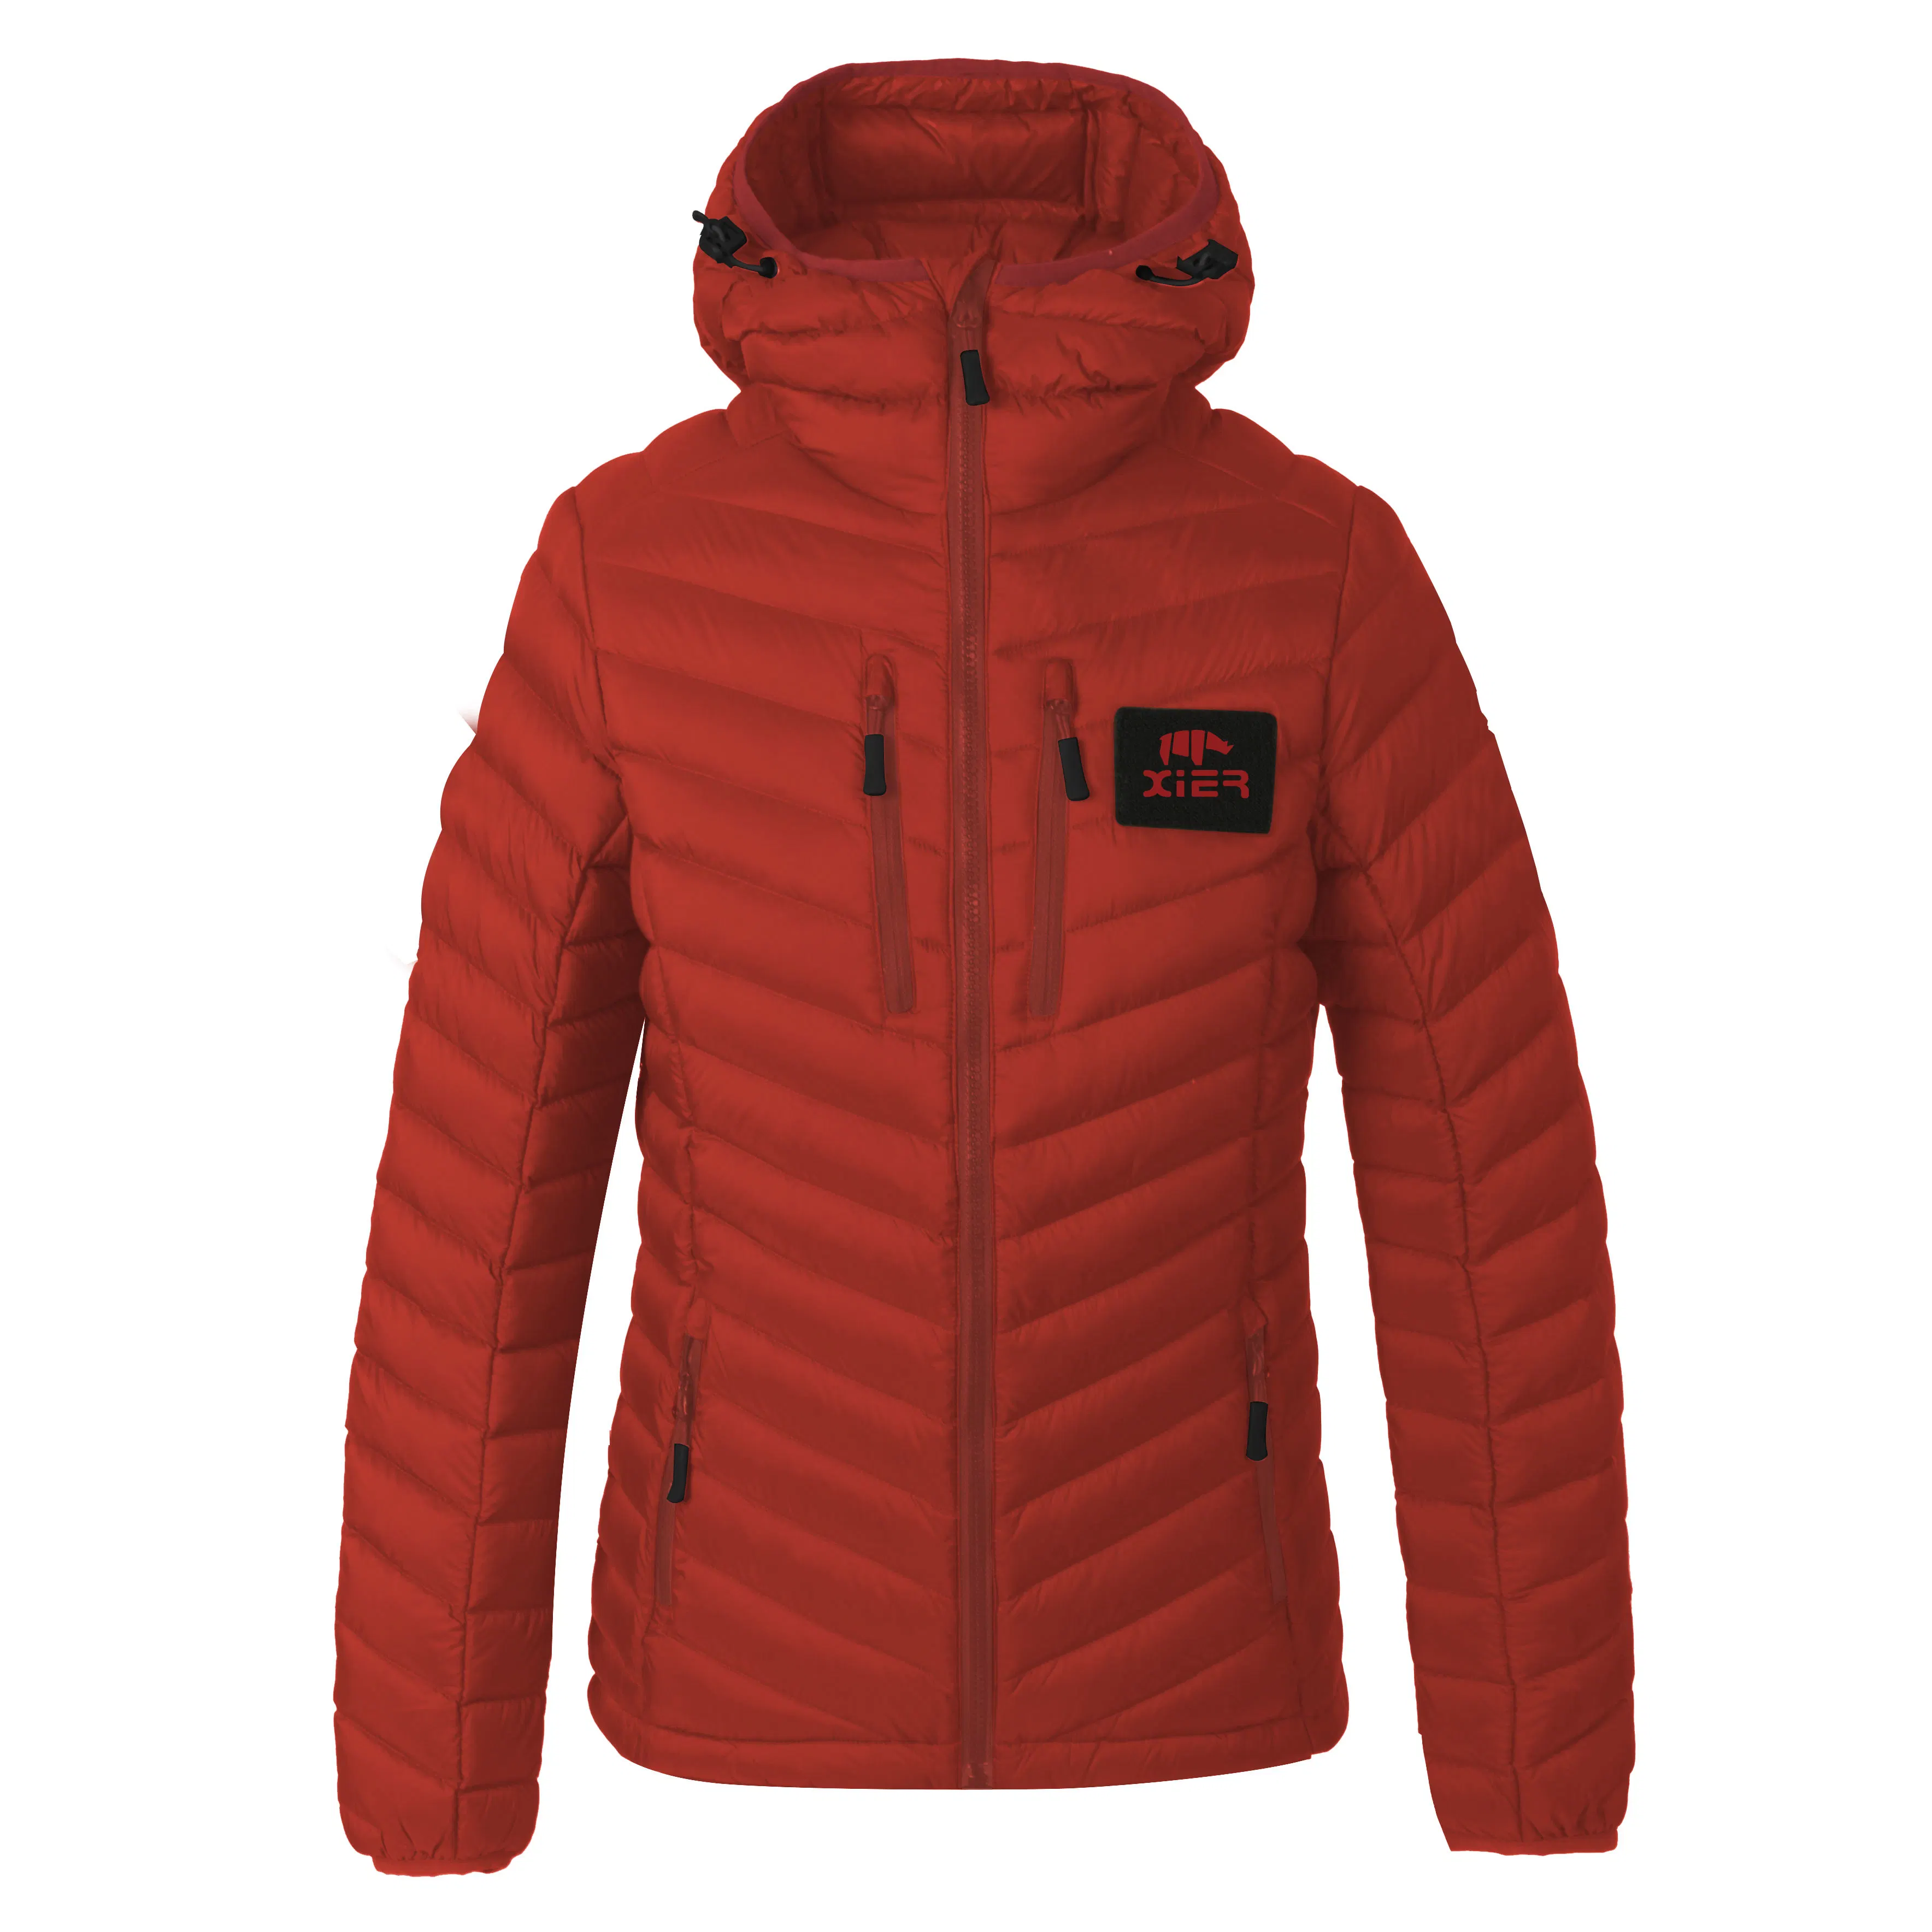 Rendimiento de alta calidad/alto costo OEM Factory Winter Jacket Mens Duck Down Padded Chaqueta cálida Parka sólida